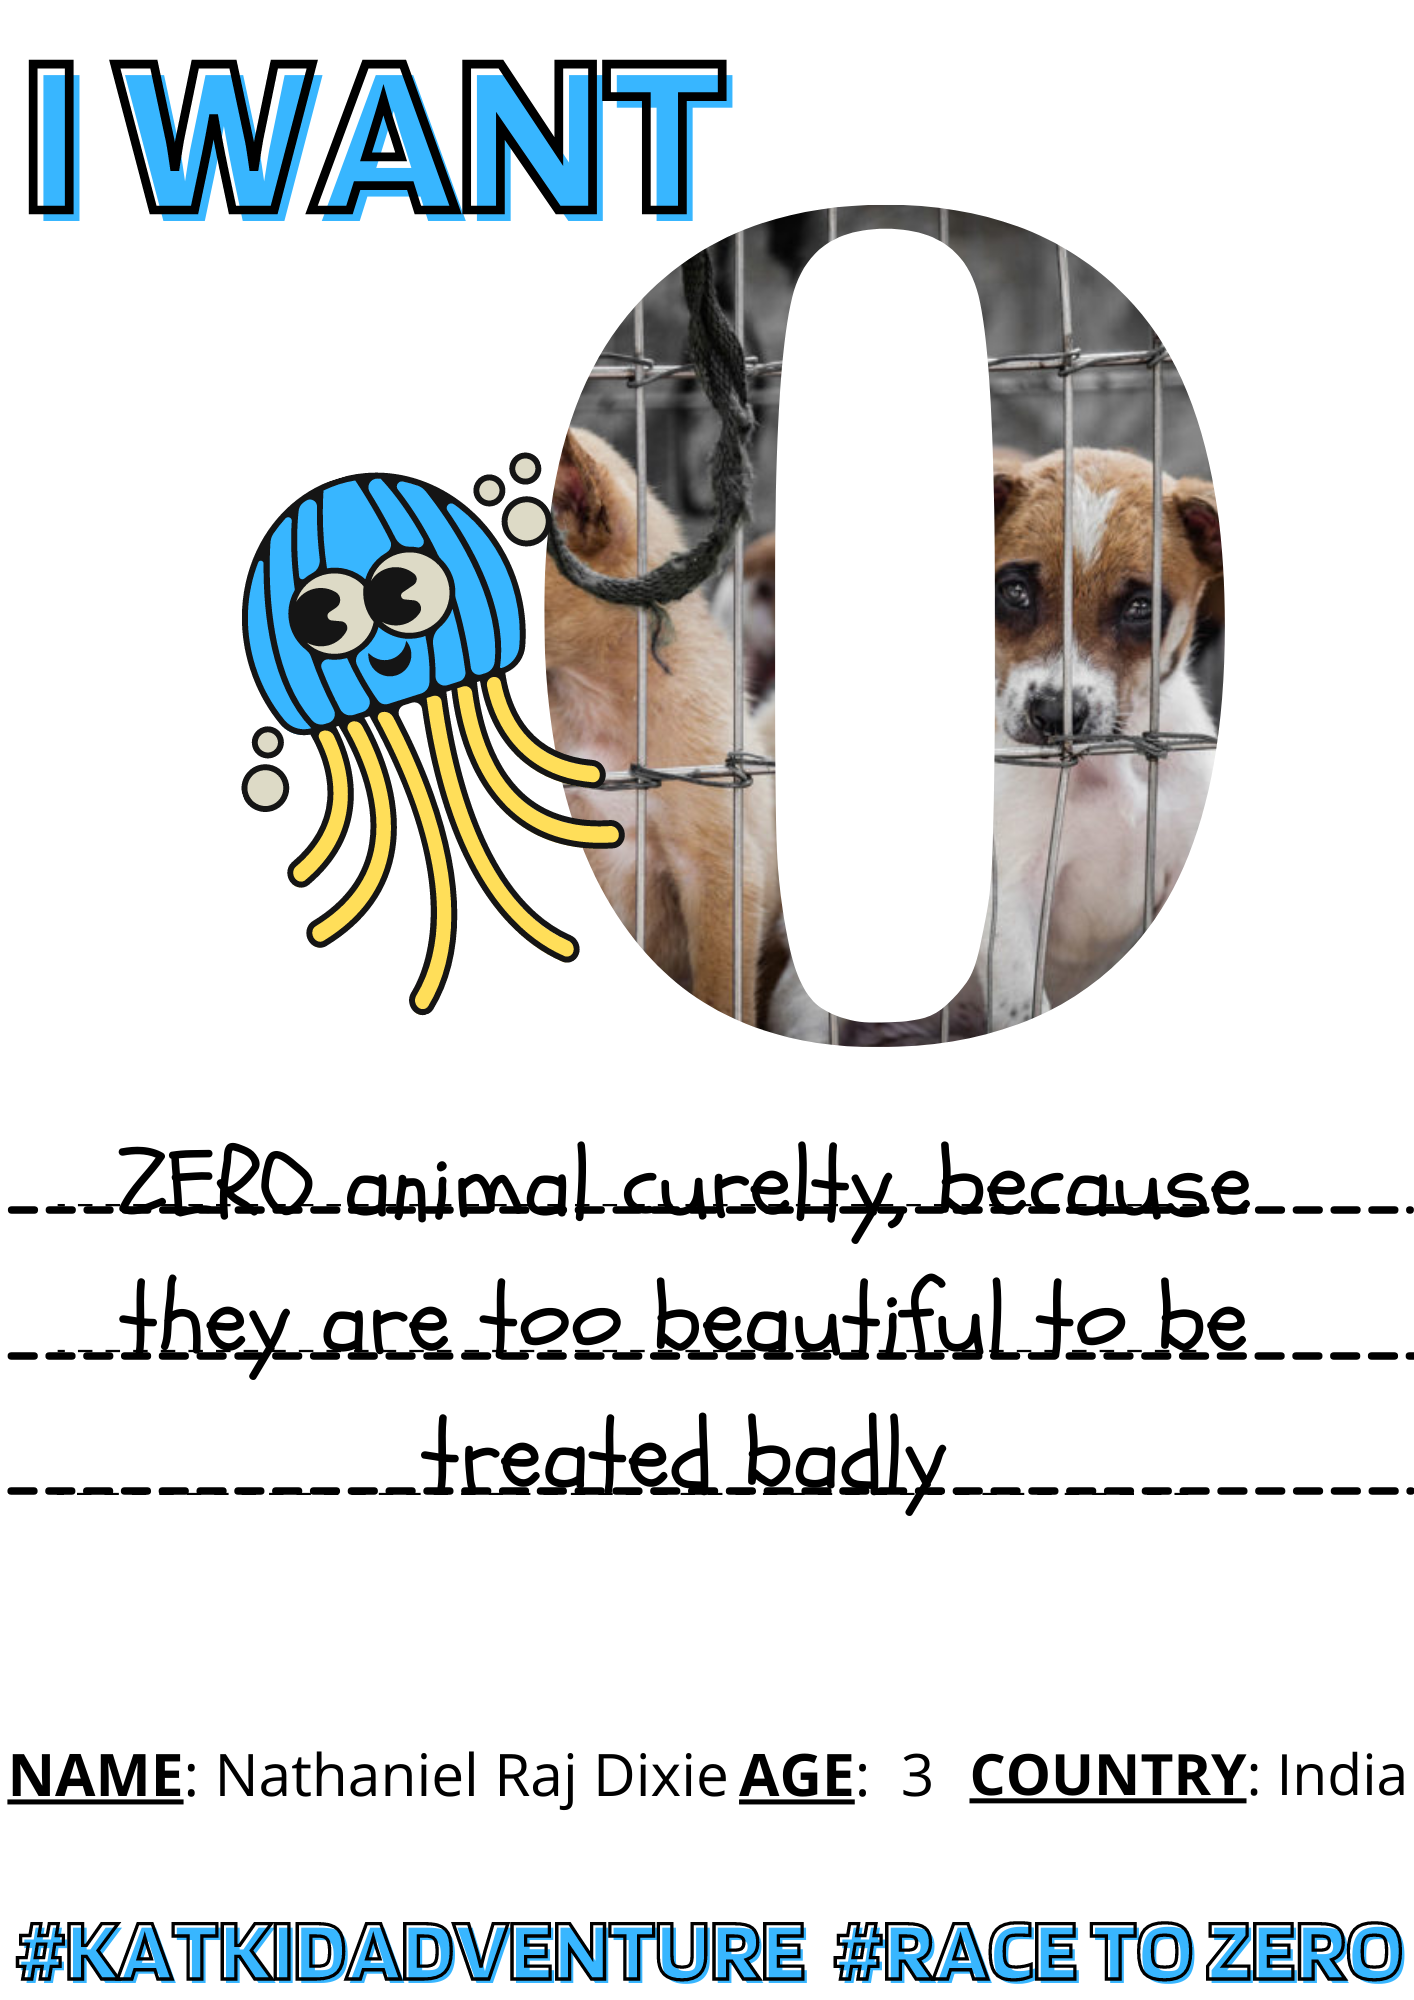 race to zero activity - Animal Curelty